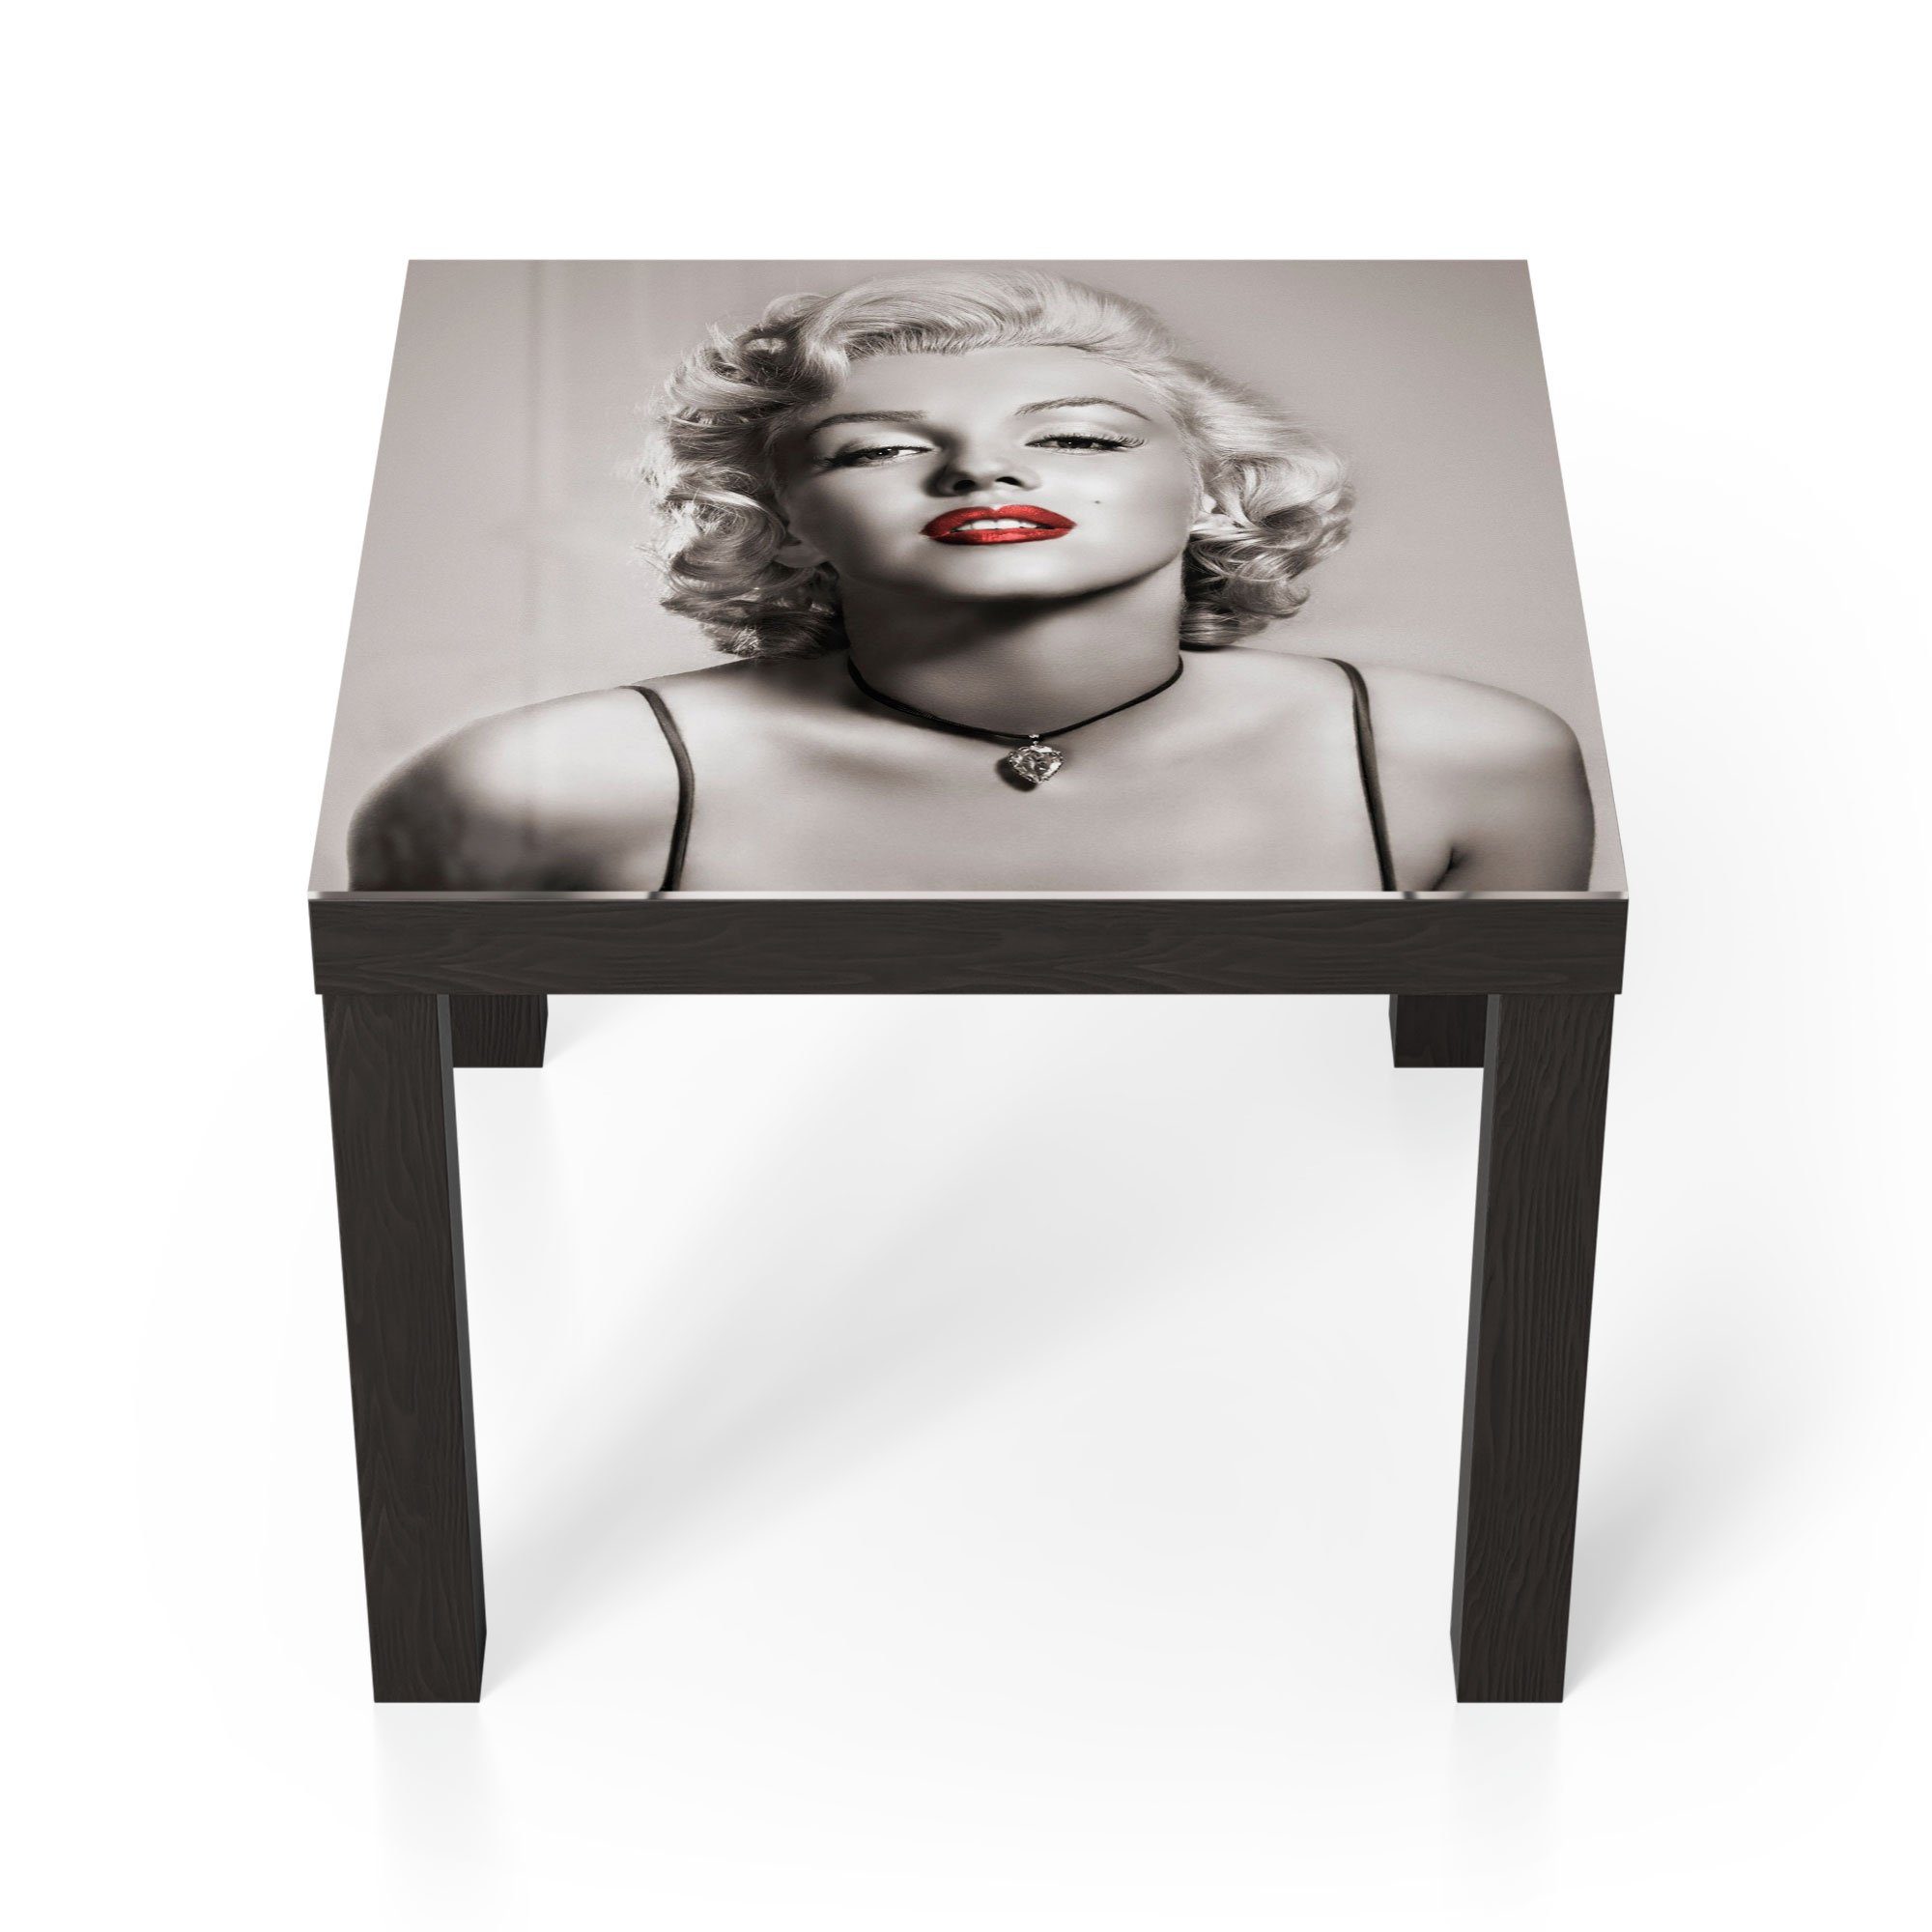 DEQORI Couchtisch 'Elegante Marilyn Monroe', Glas Beistelltisch Glastisch modern Schwarz